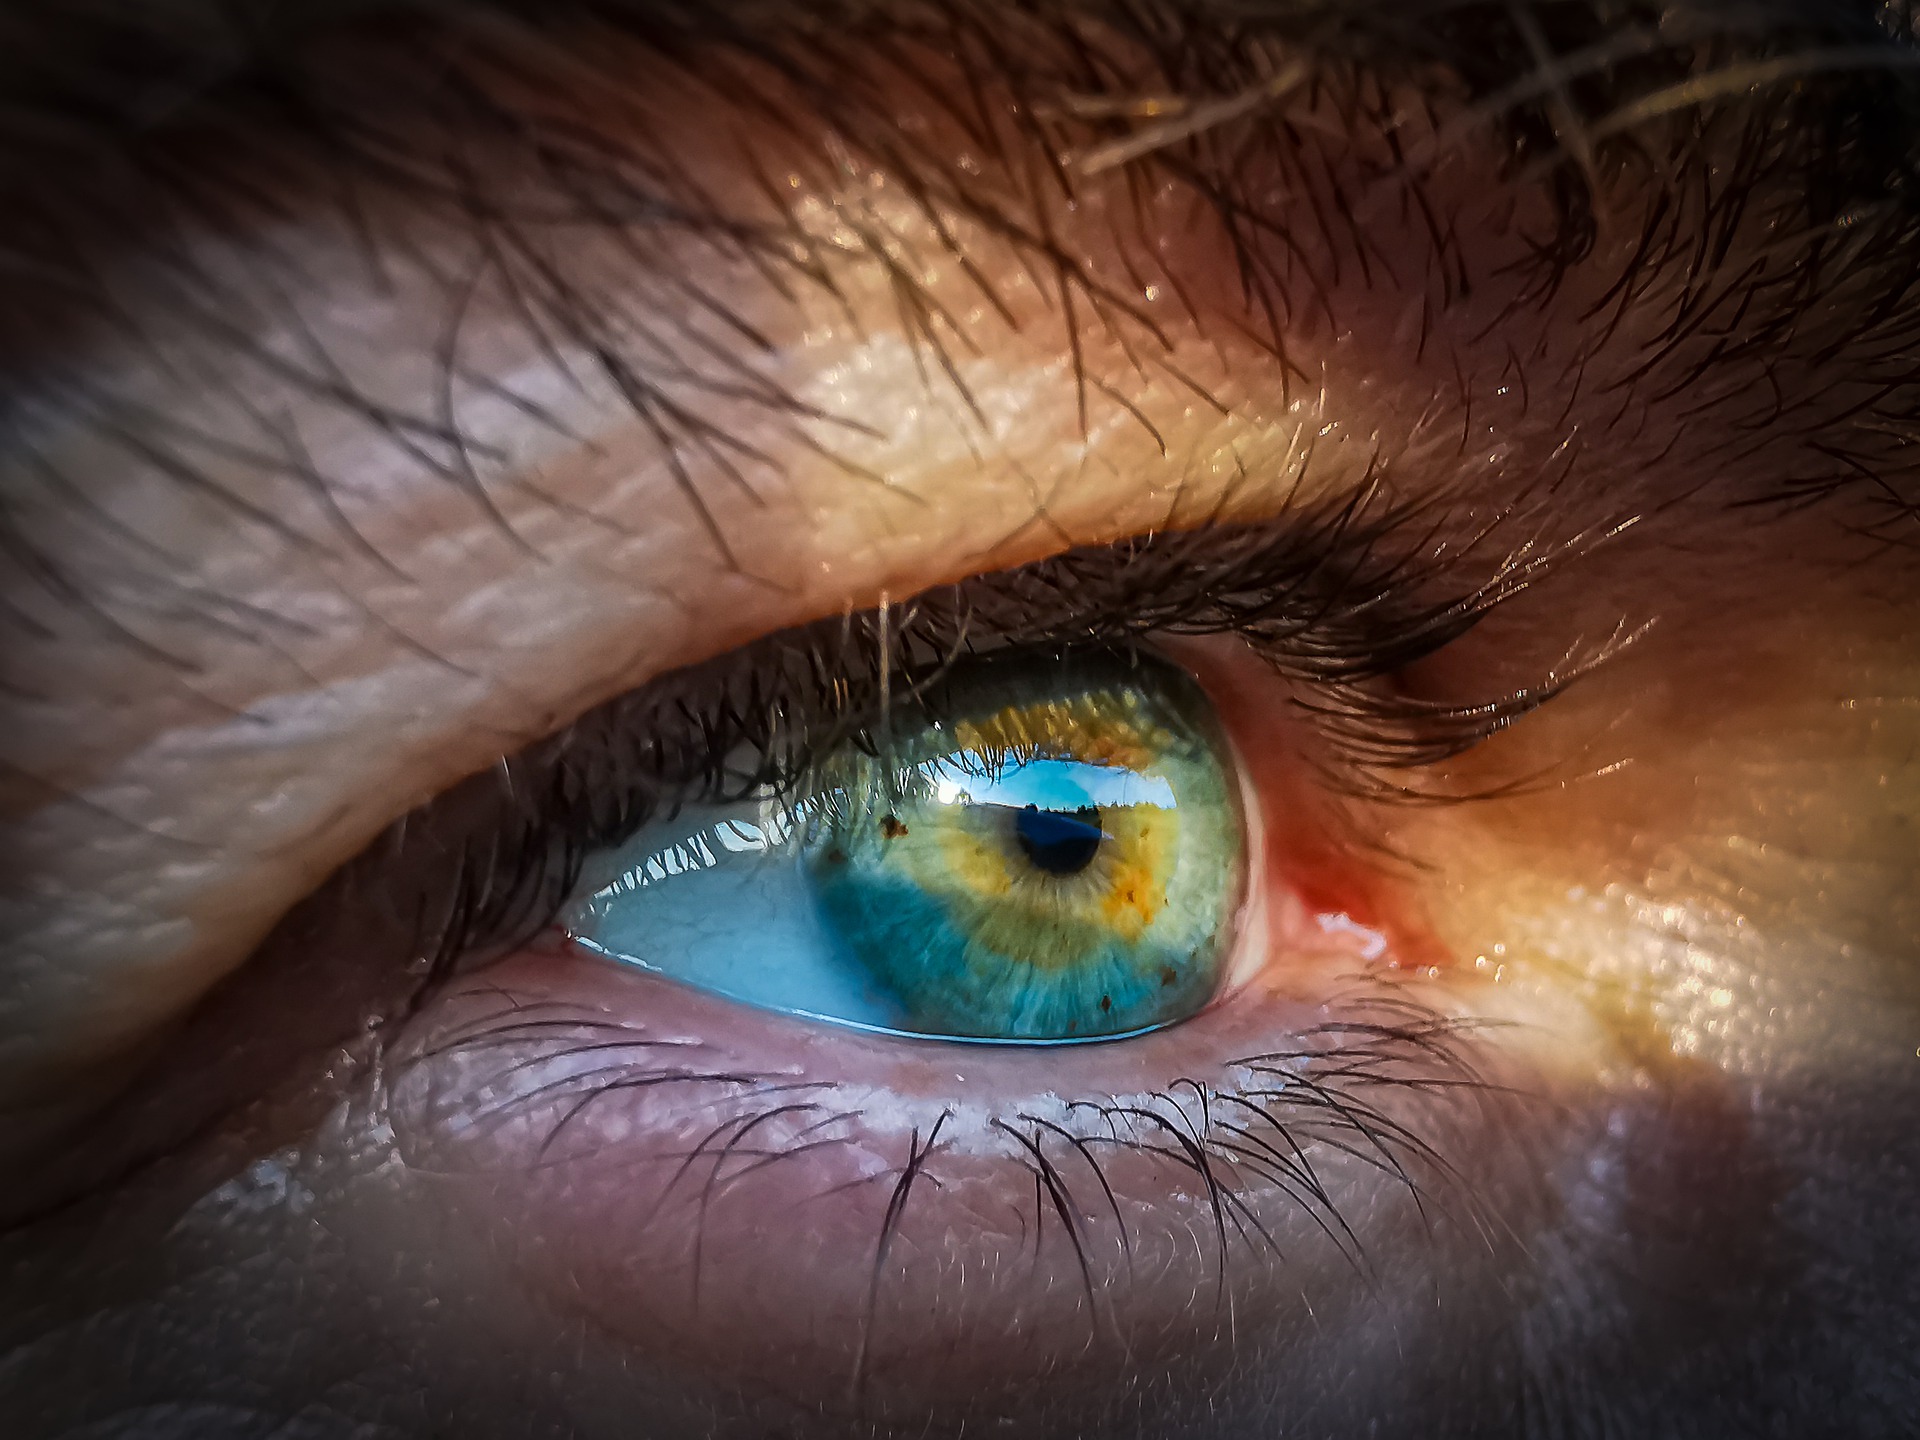 Hamarosan magyar betegeken is tesztelhetik az egyedülálló látás-visszaállító terápiát